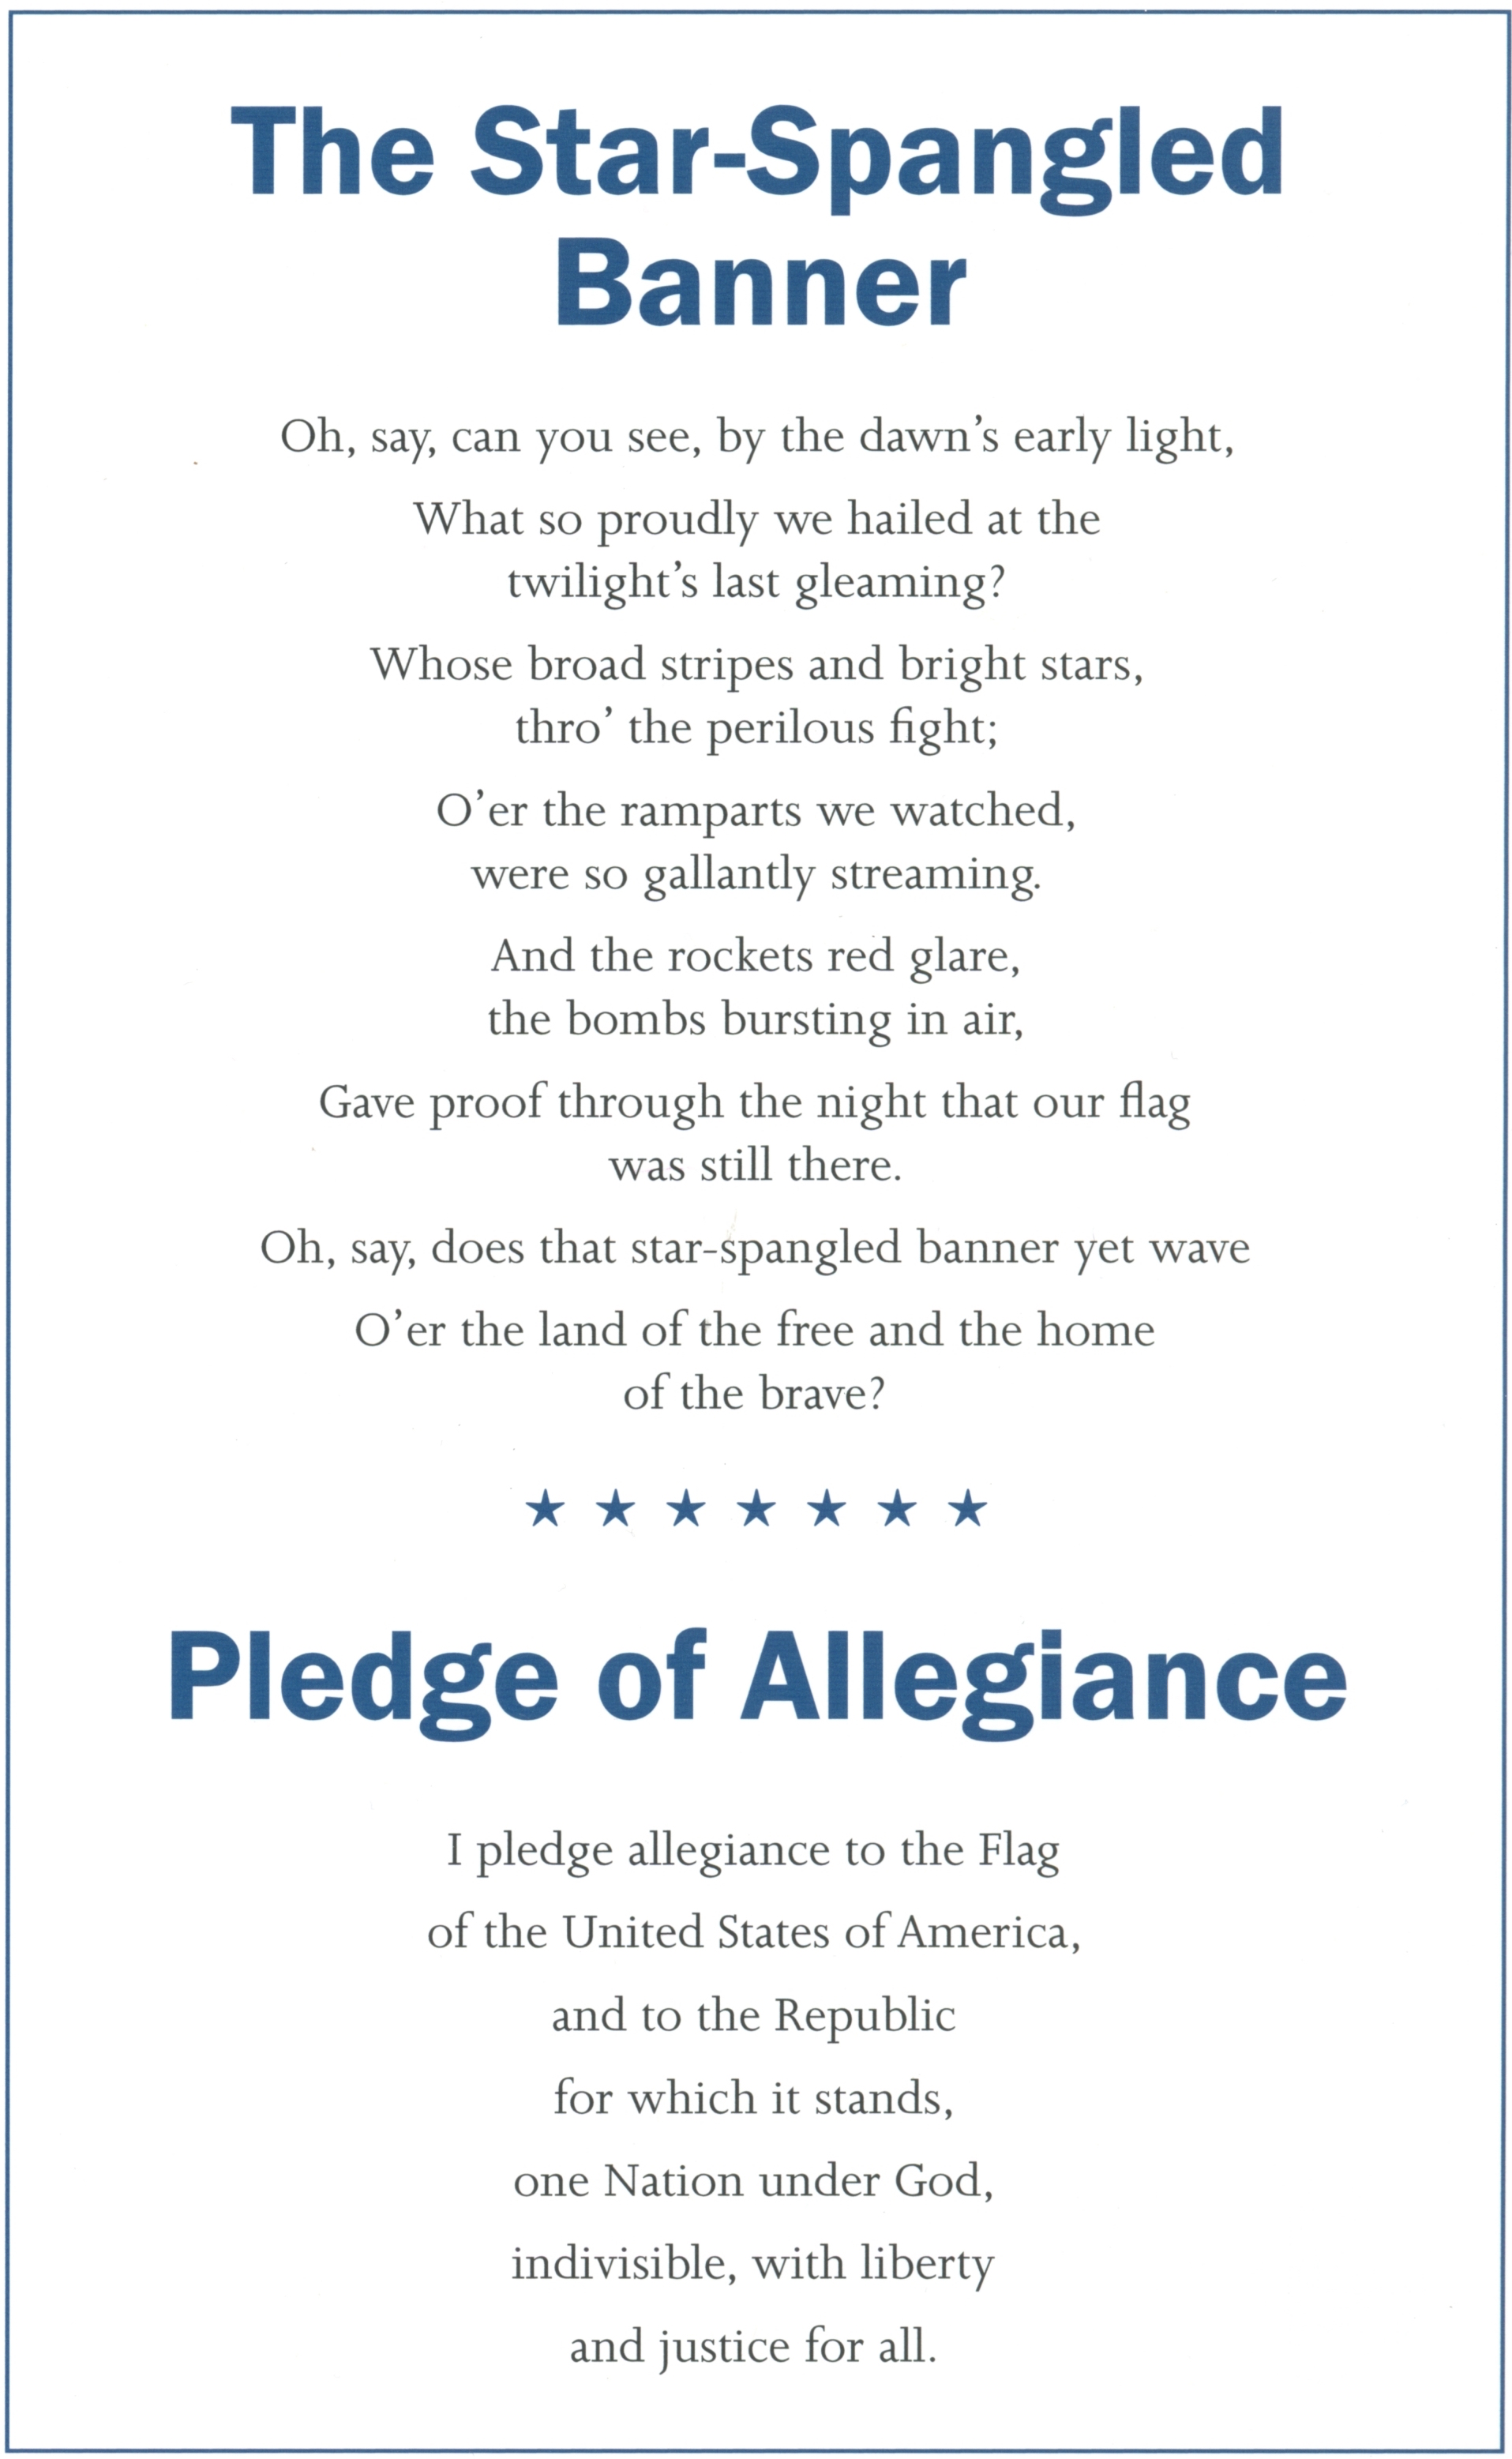 The Star-Spangled Banner.jpg